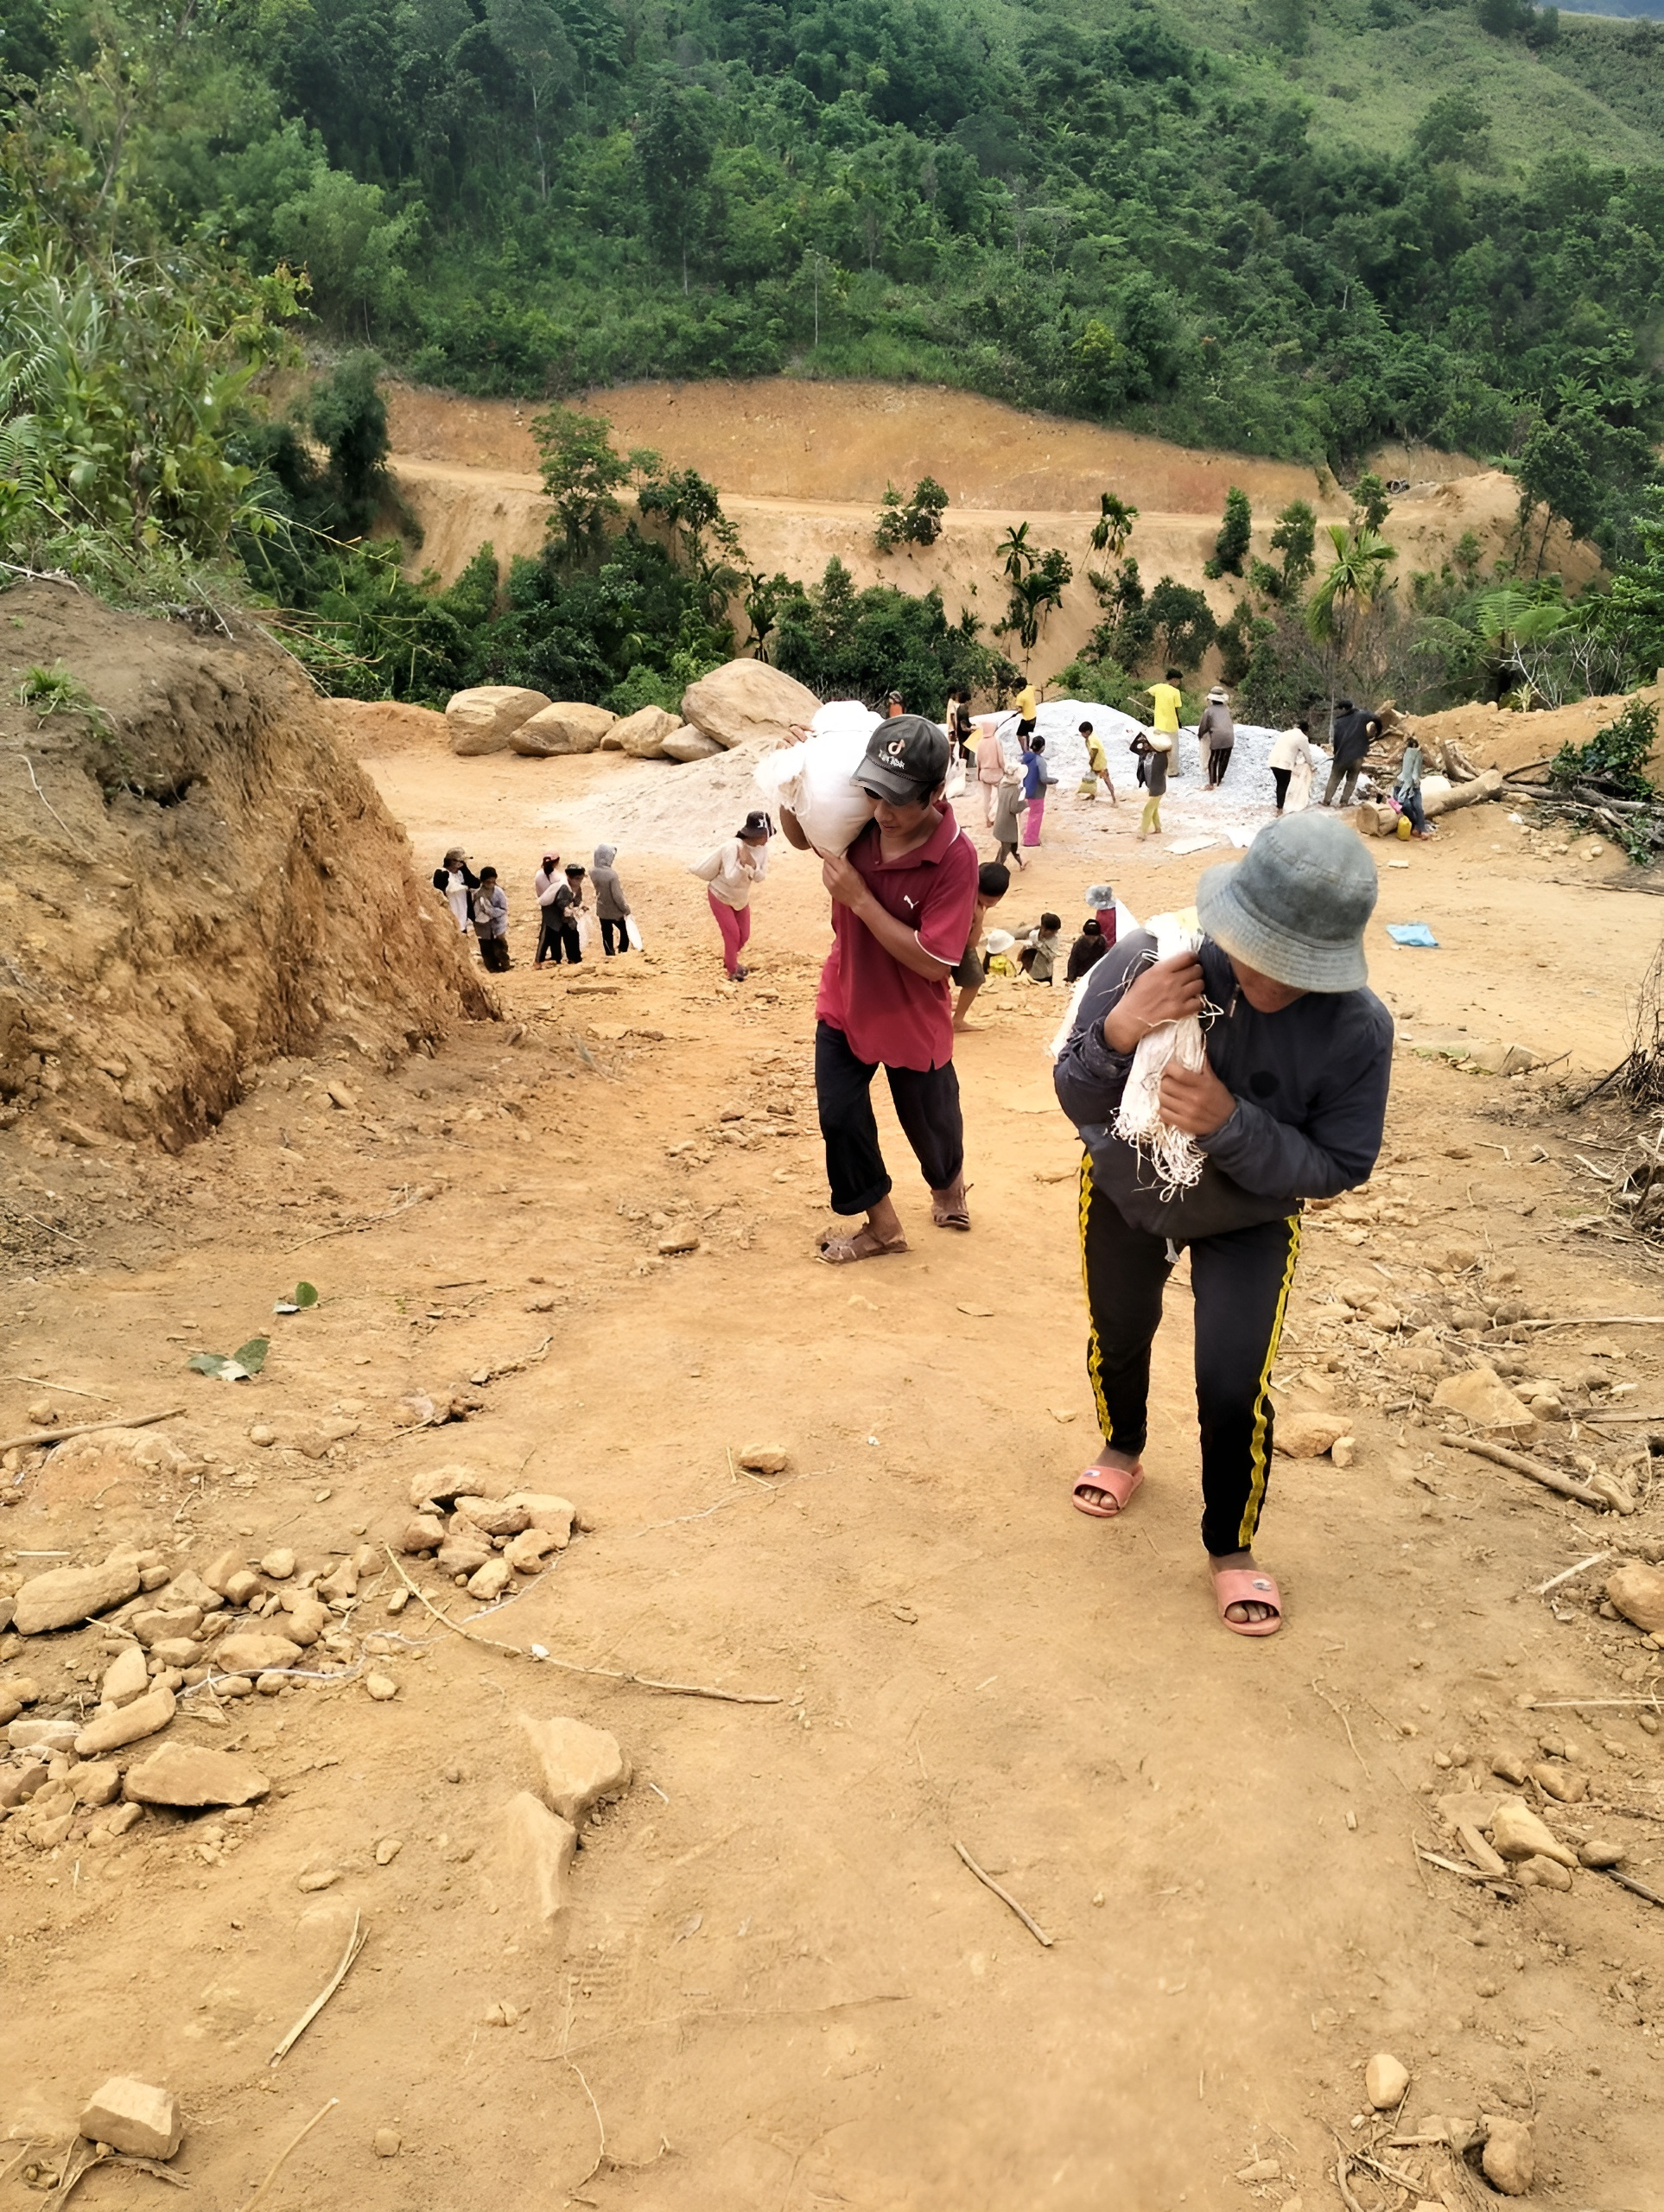 Nhóm bạn trẻ băng rừng, lội suối xây 17 ngôi trường cho học sinh vùng núi: "Các con đừng bỏ học nghe!" - Ảnh 5.